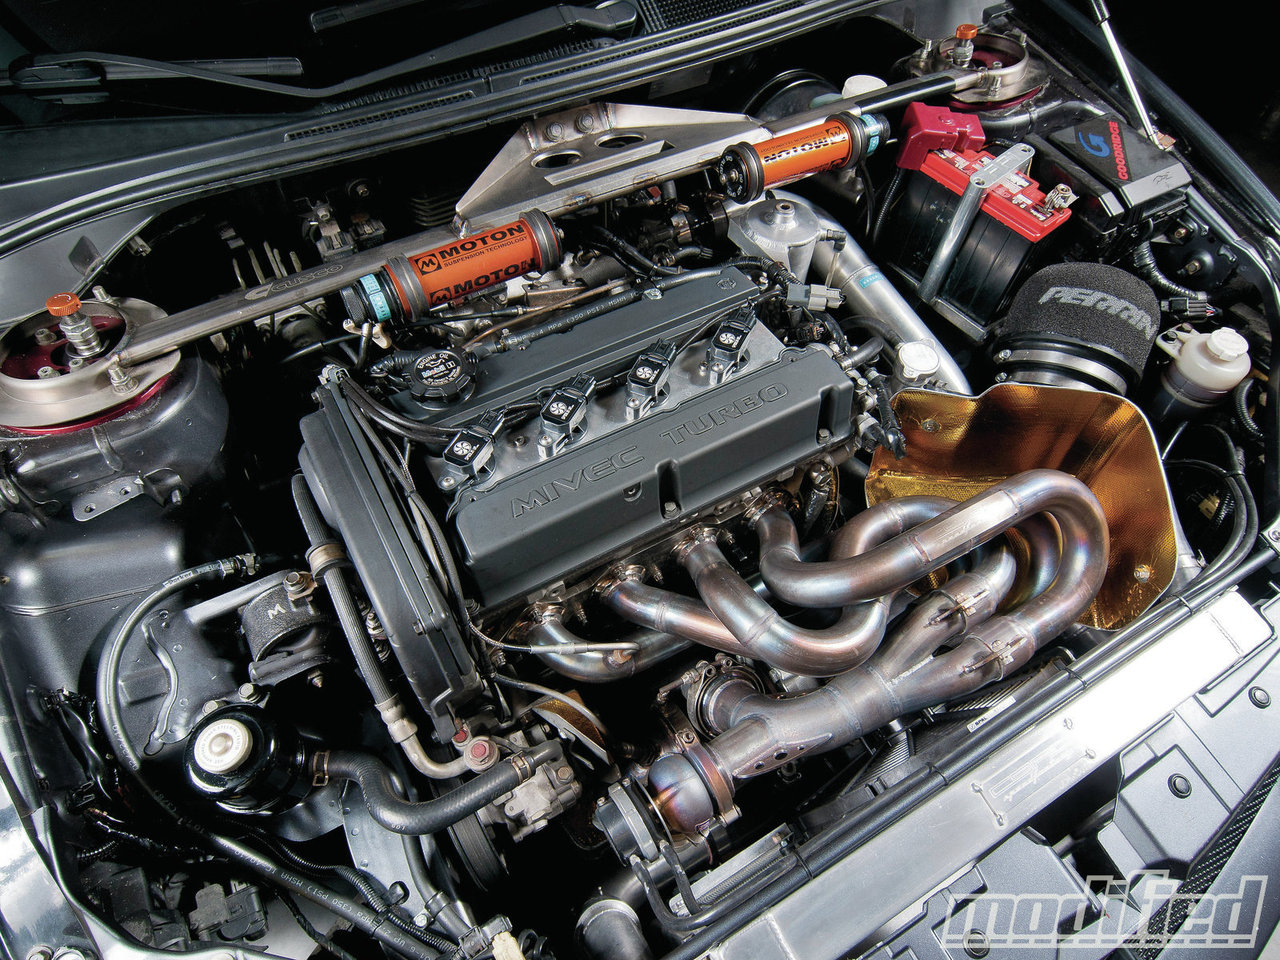 Lancer 9 1.6 двигатель. Двигатель Эво 9. Mitsubishi EVO 9 двигатель. Лансер 9 1.6 двигатель. Мотор Лансер 9 Эво.